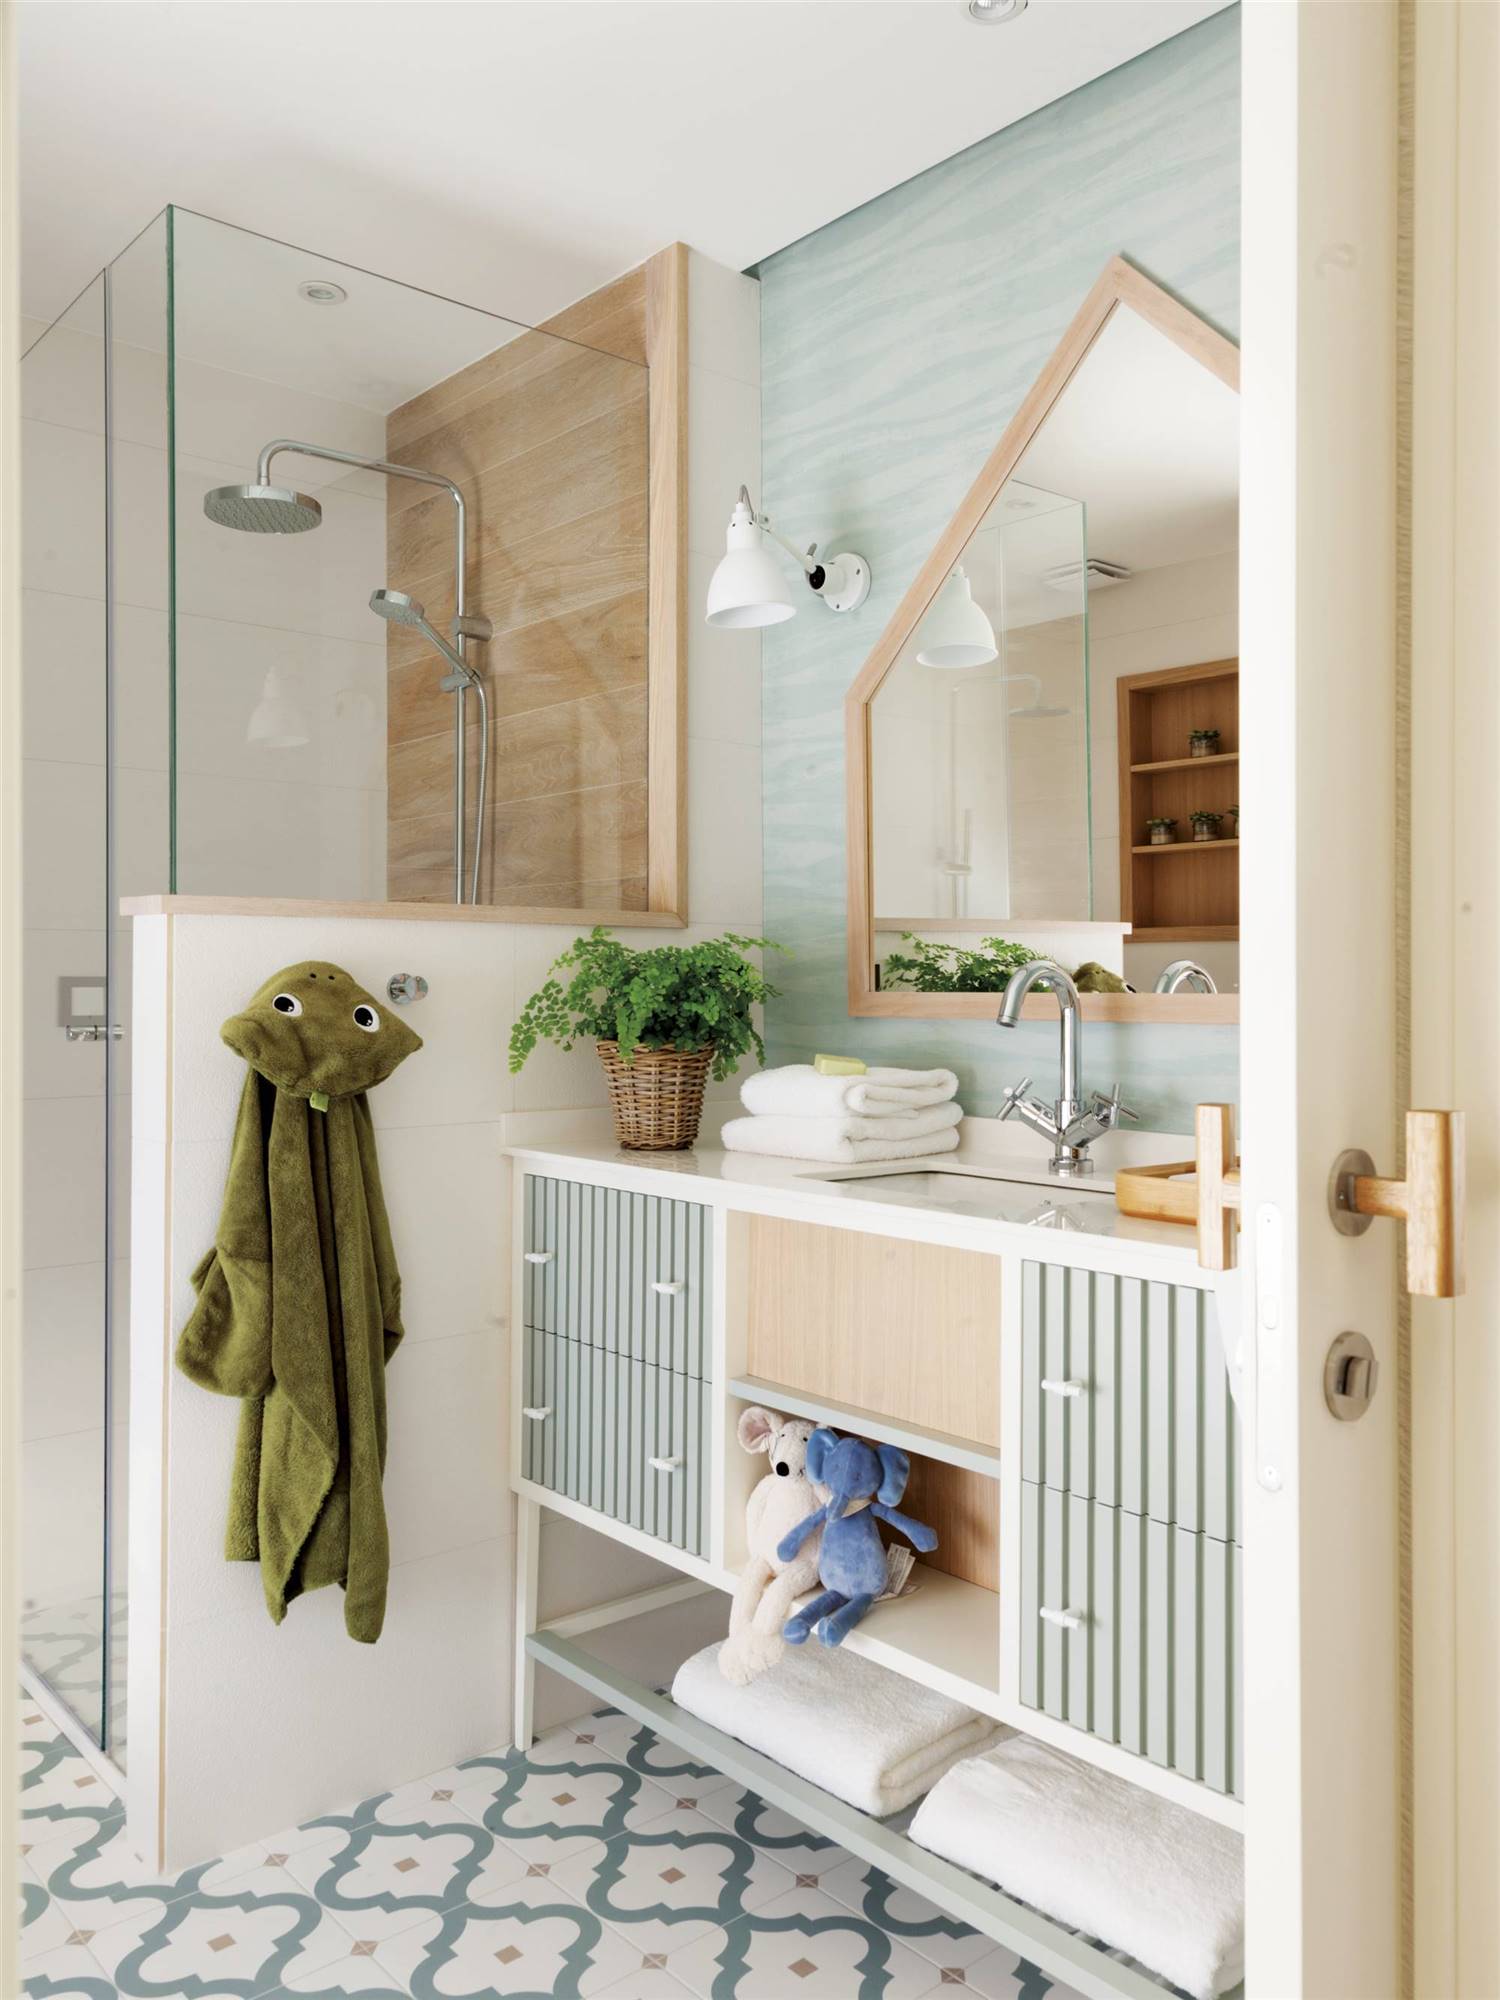 Baño infantil con ducha de obra, baldosa estilo hidráulico, espejo en forma de casita y papel pintado azul aguamarina a juego con el mueble